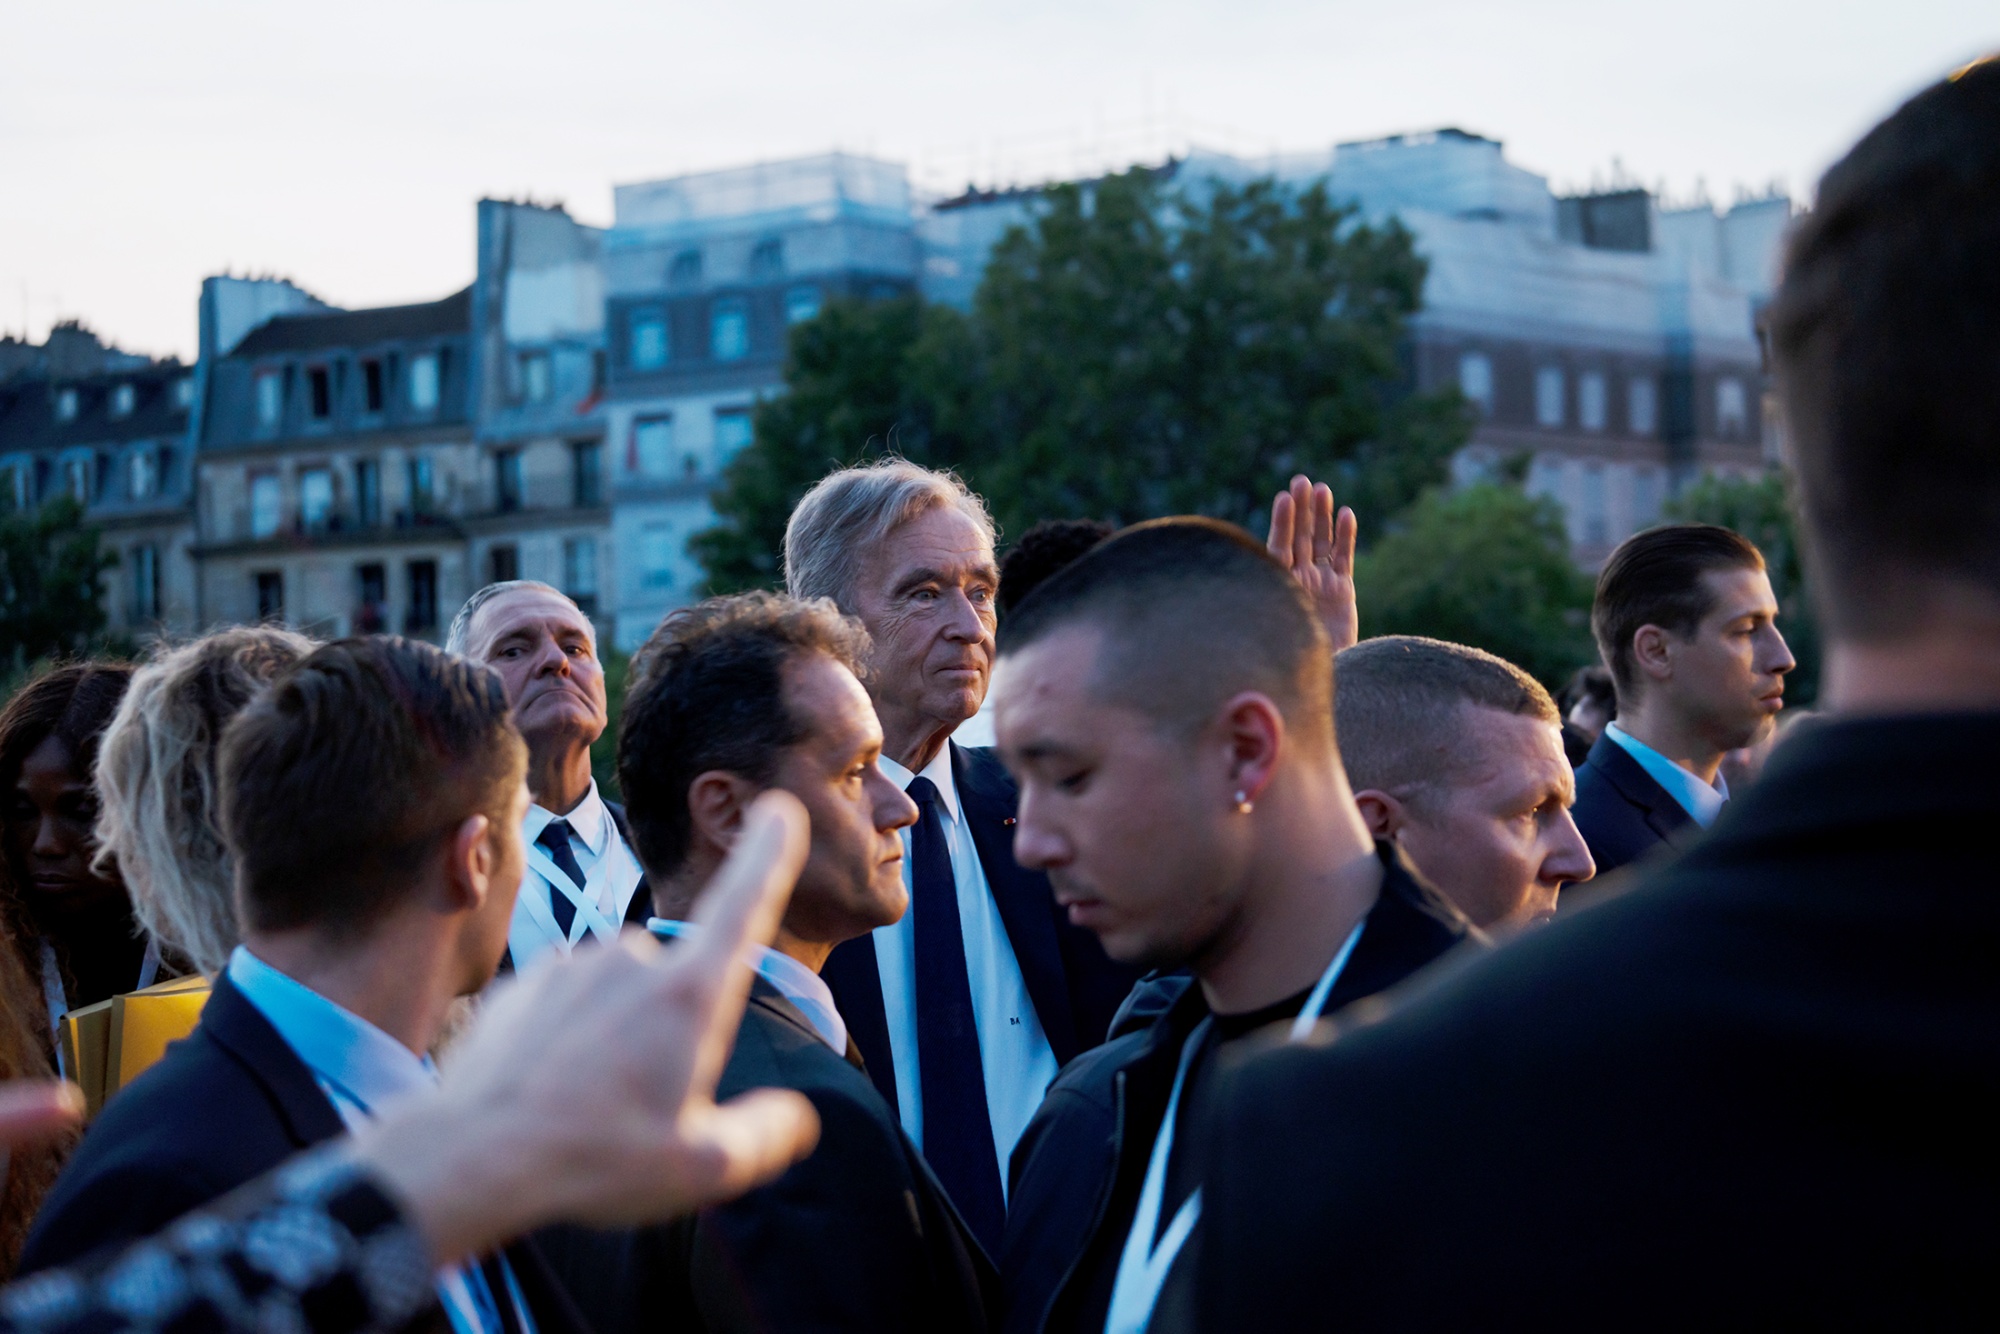 Pharrell unveils his vision for Louis Vuitton on Paris' oldest bridge